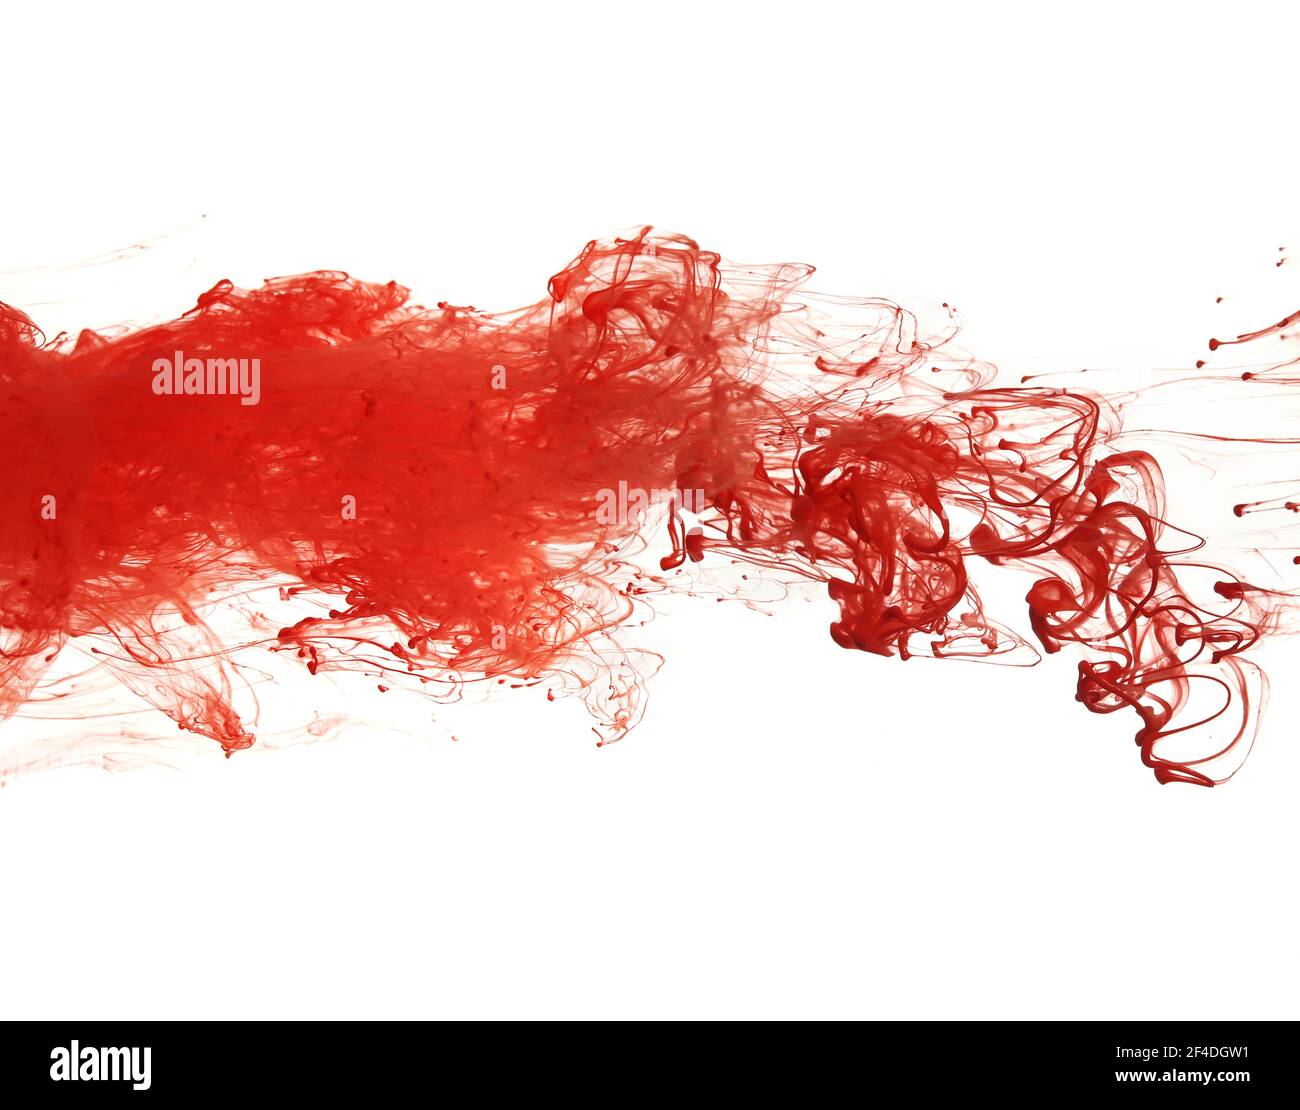 Motif abstrait tombant dans la goutte d'eau de la peinture rouge encre sur un blanc Banque D'Images